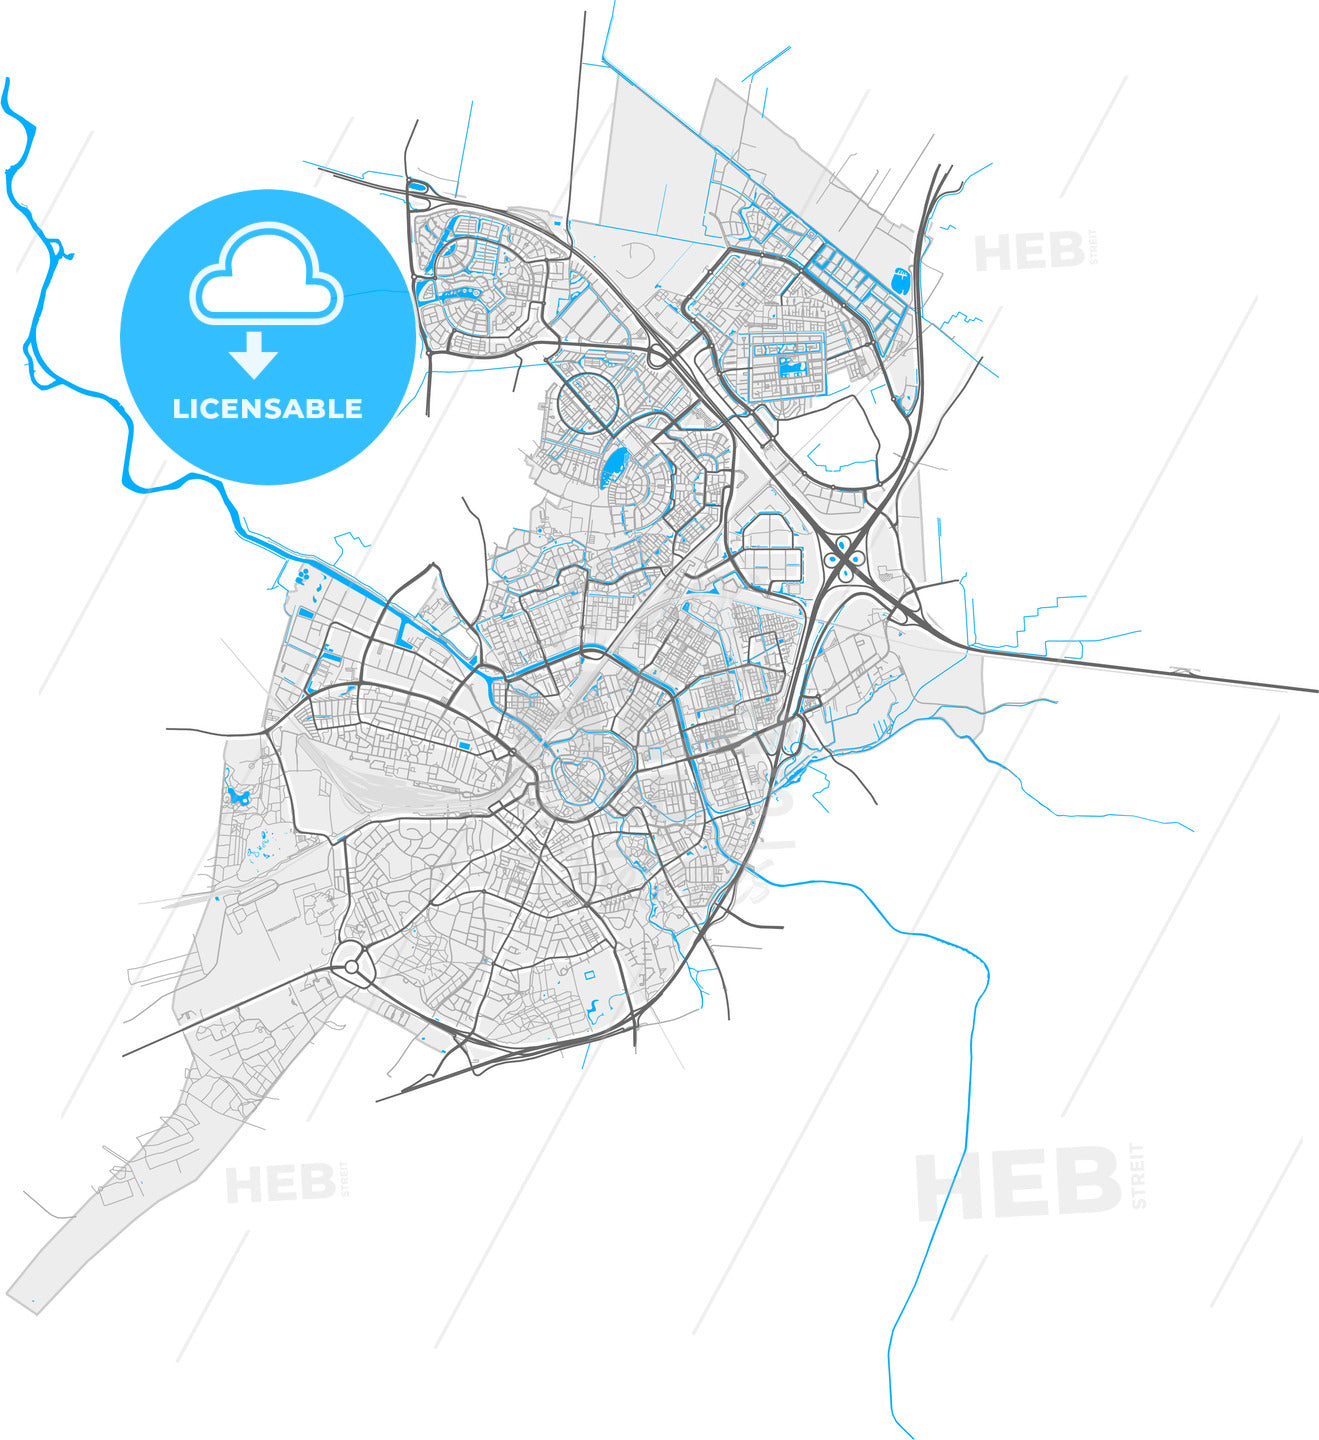 Amersfoort, Utrecht, Netherlands, high quality vector map